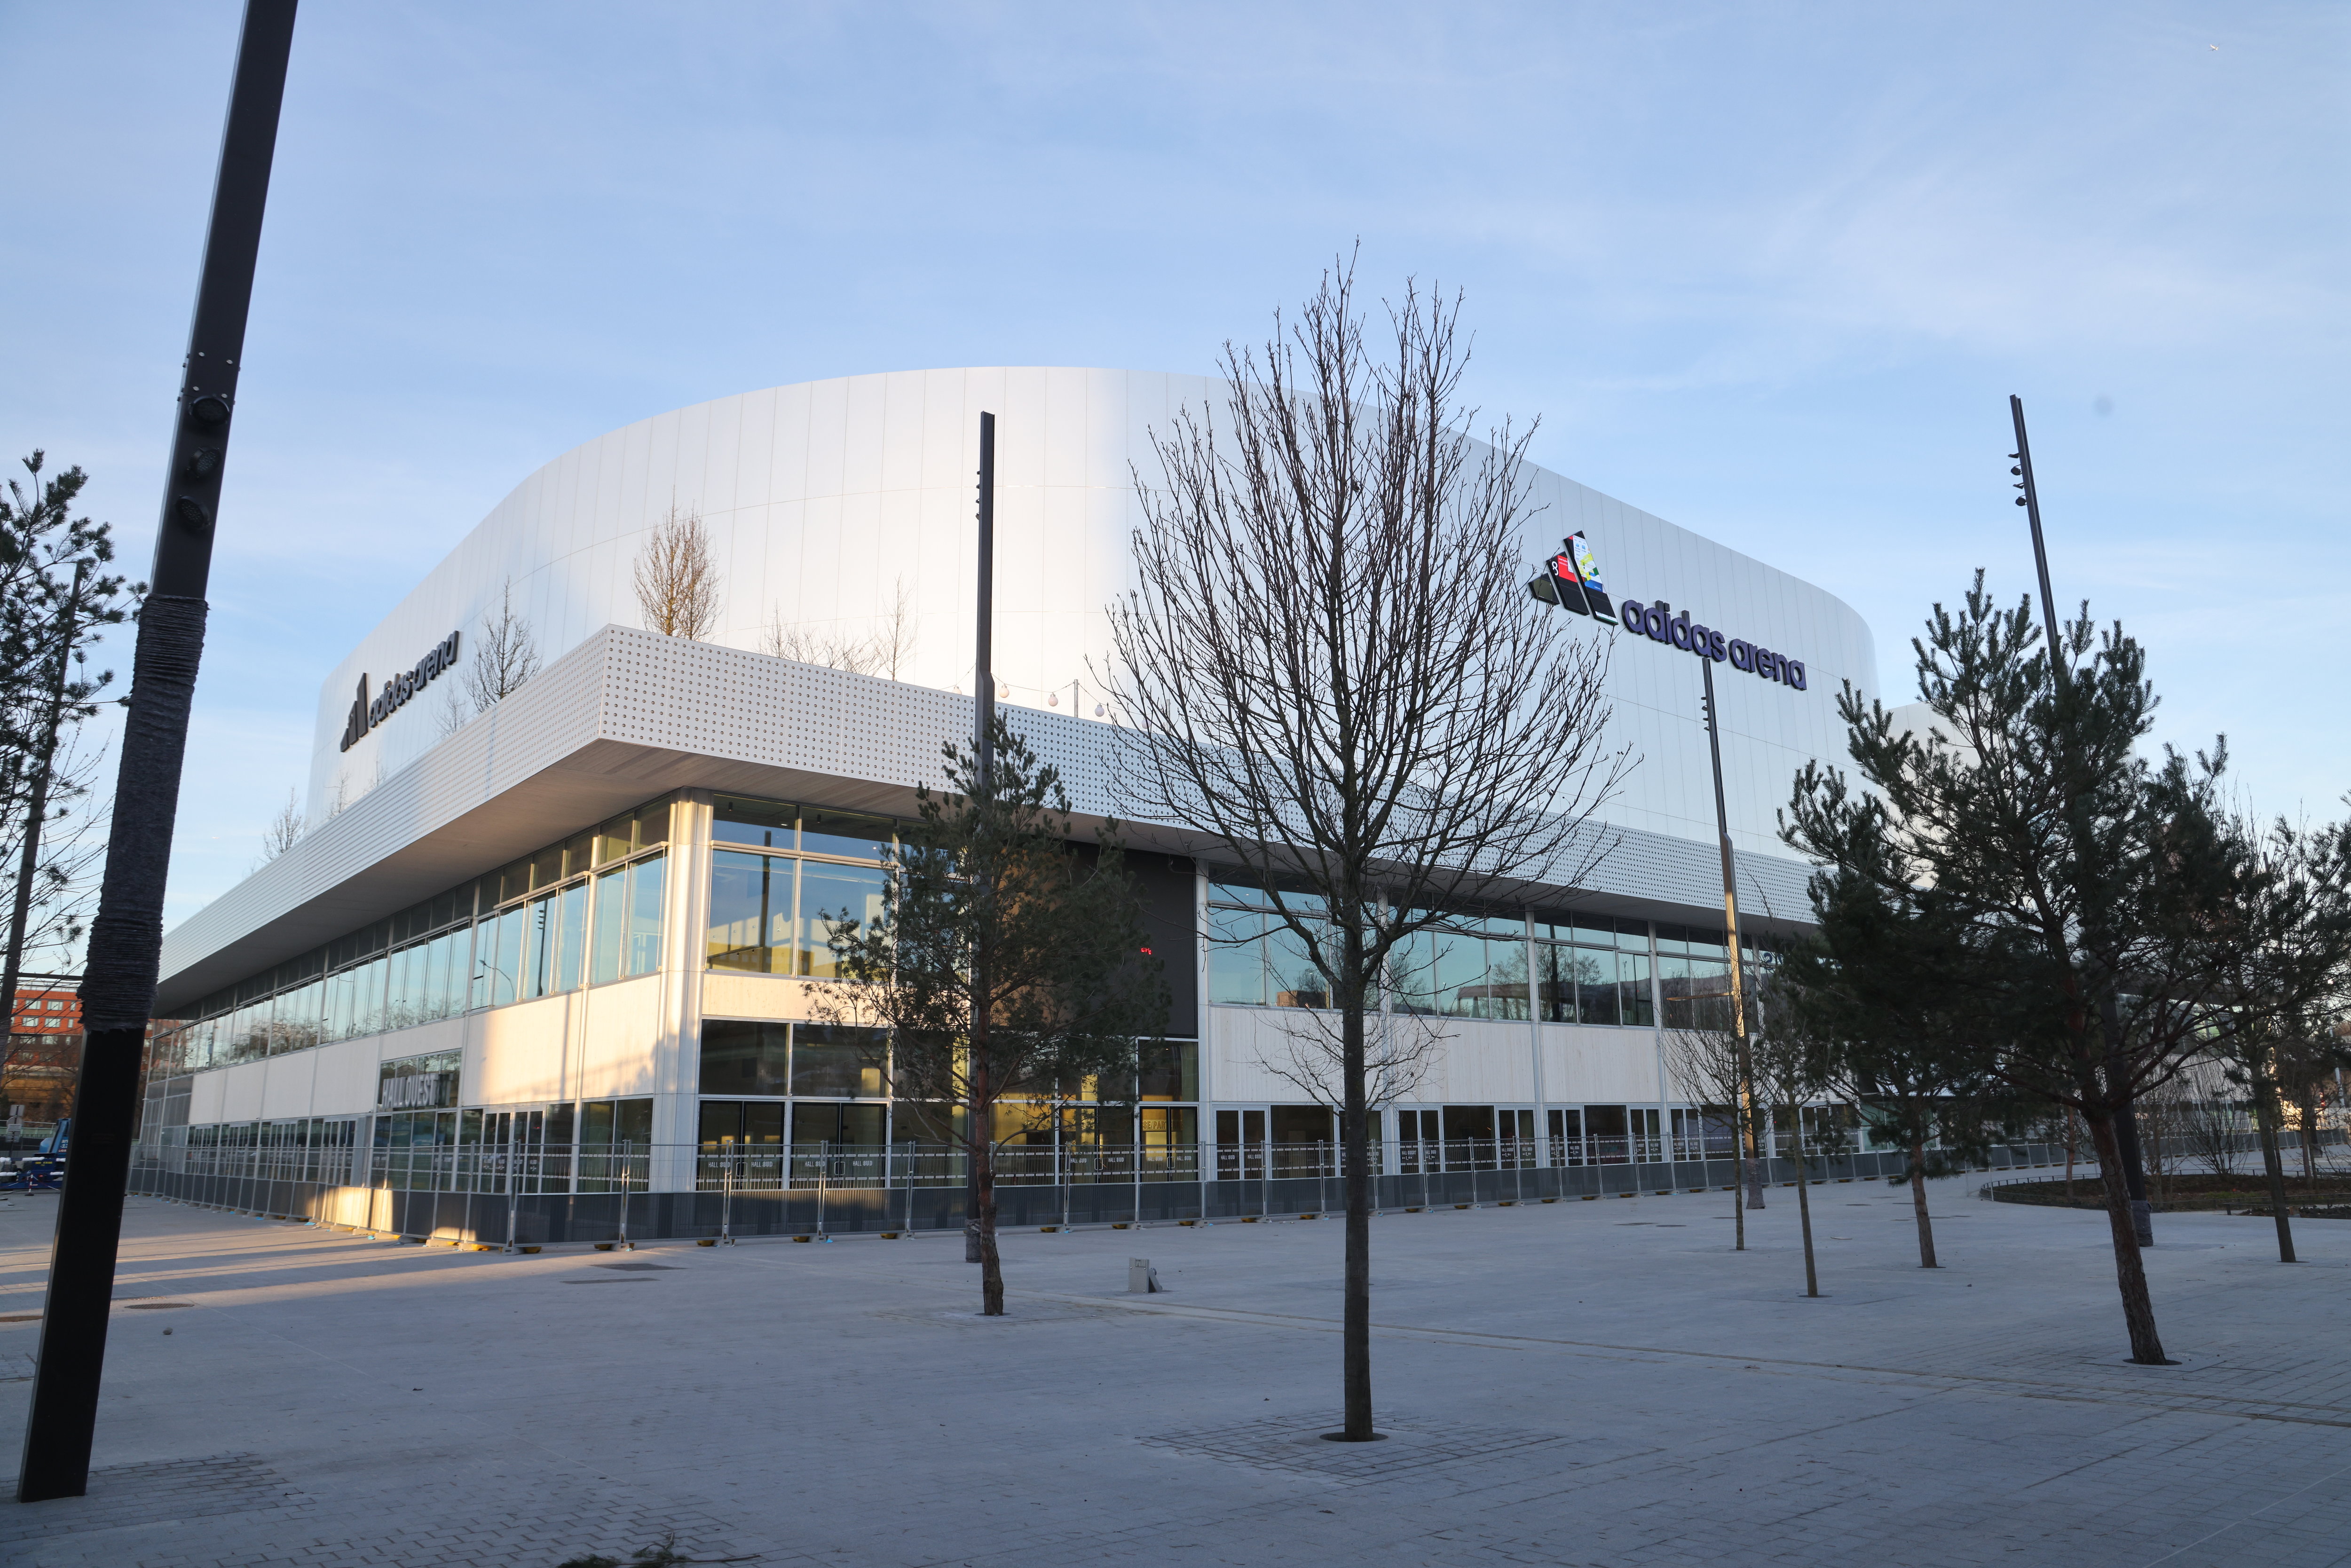 L'Adidas Arena de la Porte de la Chapelle (XVIIIe) accueille son premier match du Paris Basket ce dimanche 11 février, jour d'inauguration de cette salle olympique. LP/Philippe Lavieille